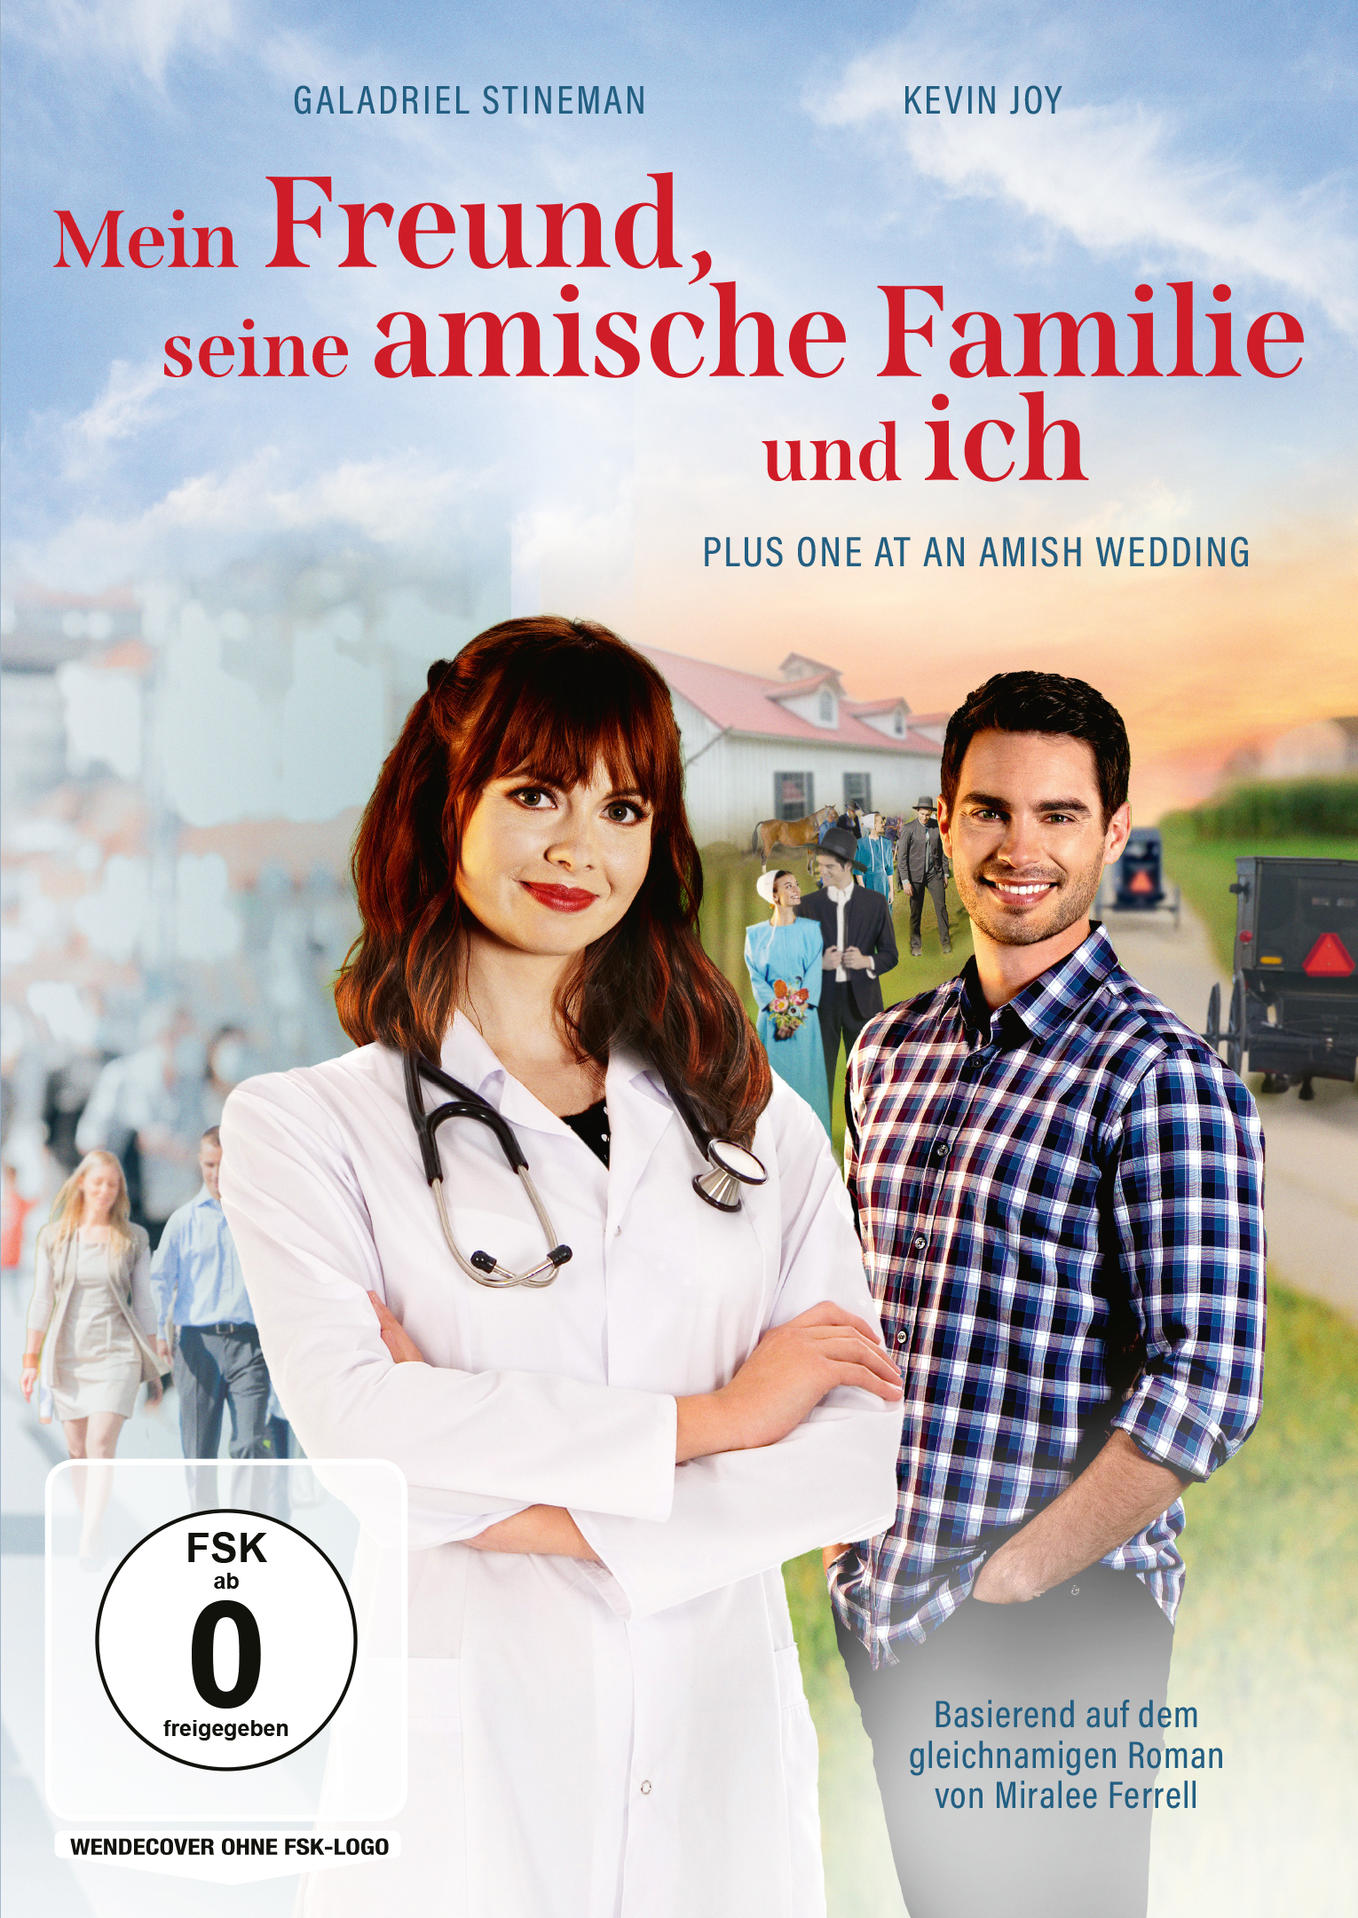 DVD at Freund, Wedding seine One Amish ich Mein Familie Plus - und amische an